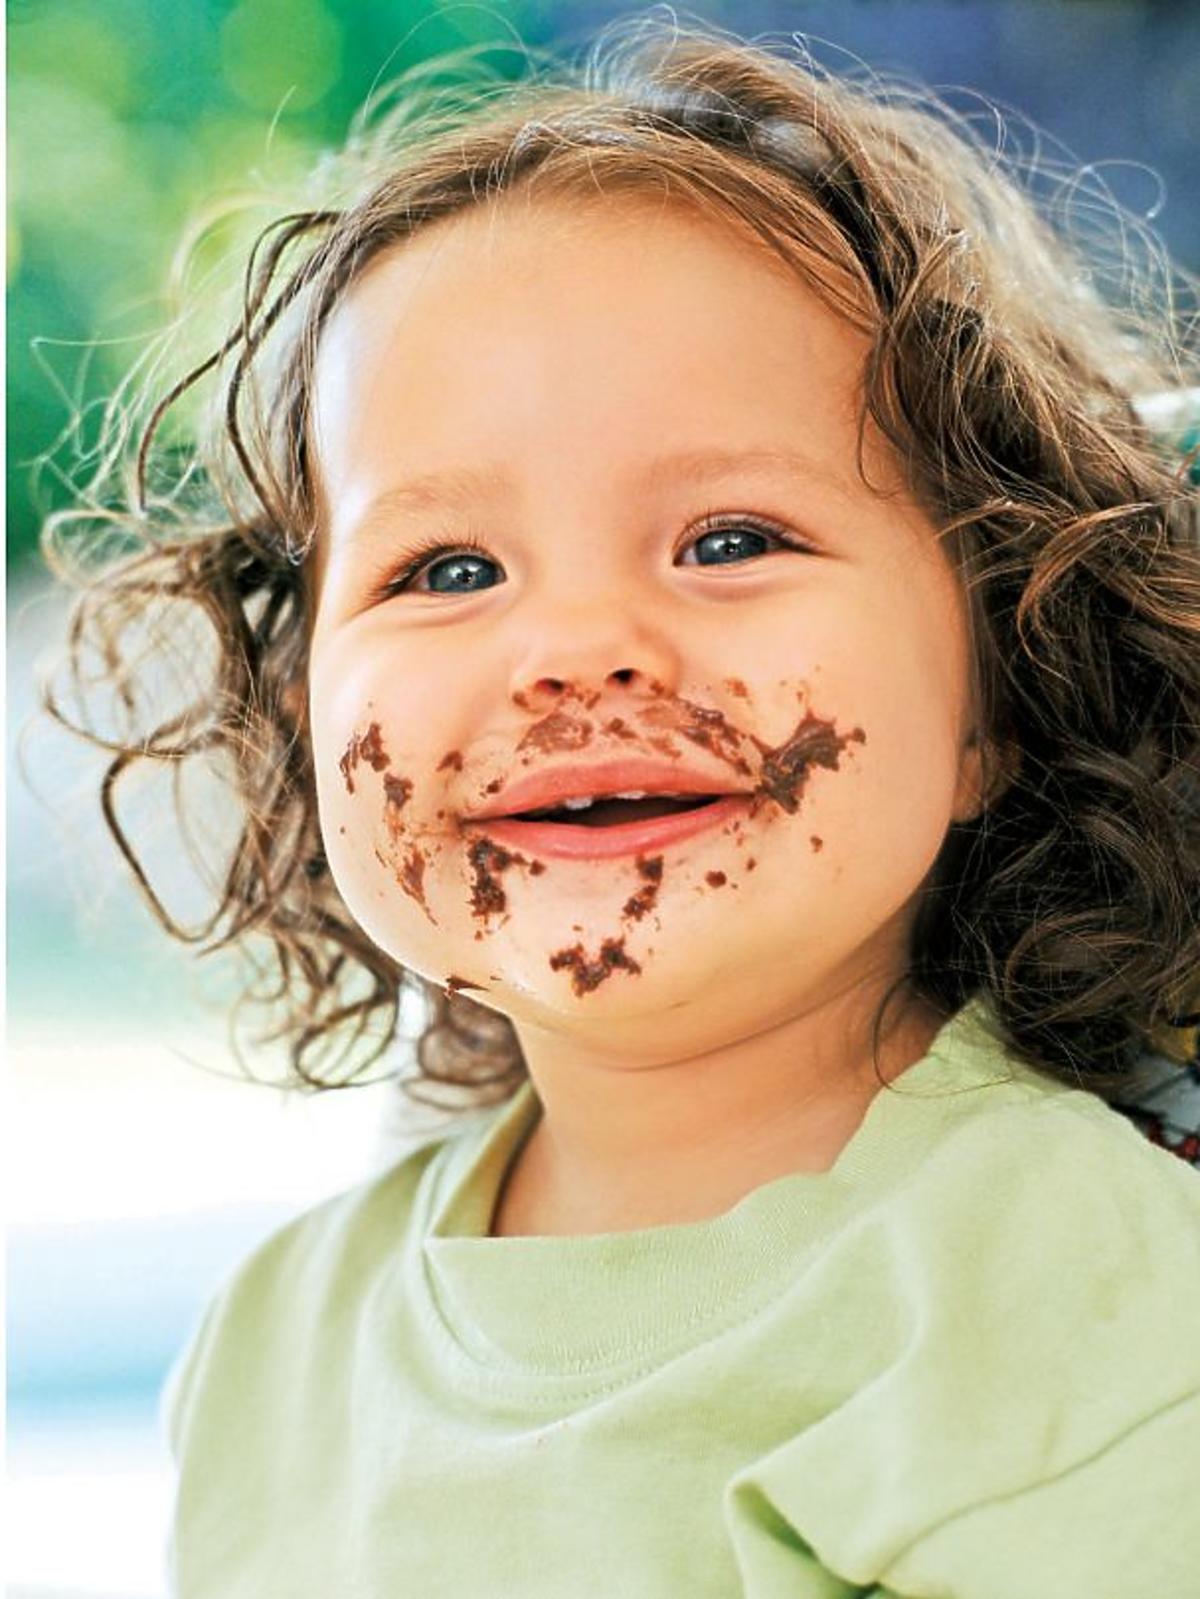 dziecko, dziewczynka, czekolada, uśmiech, słodycze